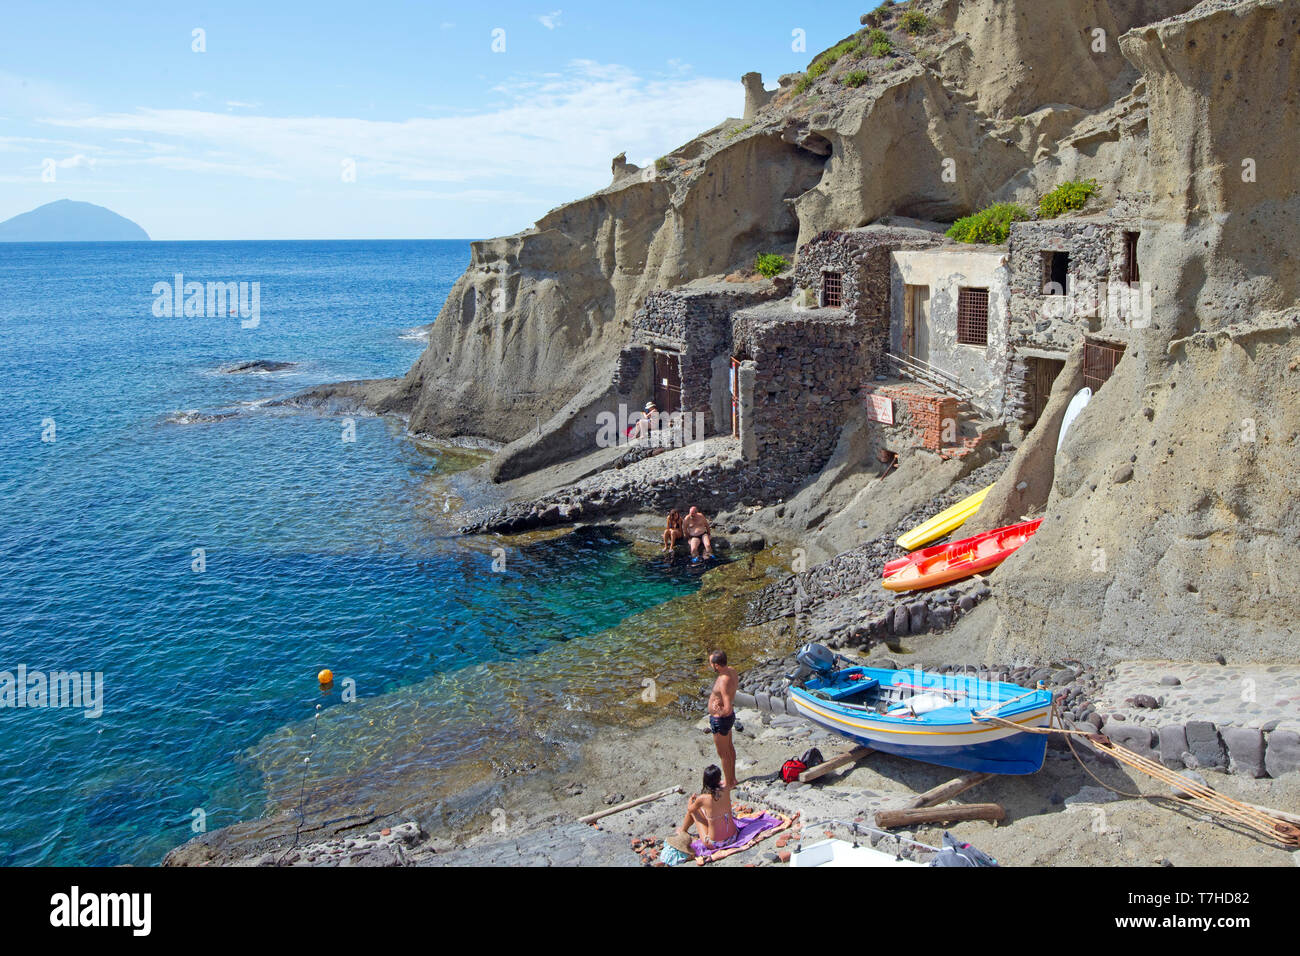 L'Italia, Sicilia e Isole Eolie, Salina, piccolo porto di Pollara scena delle riprese del film il Postino (Il Postino) Foto Stock